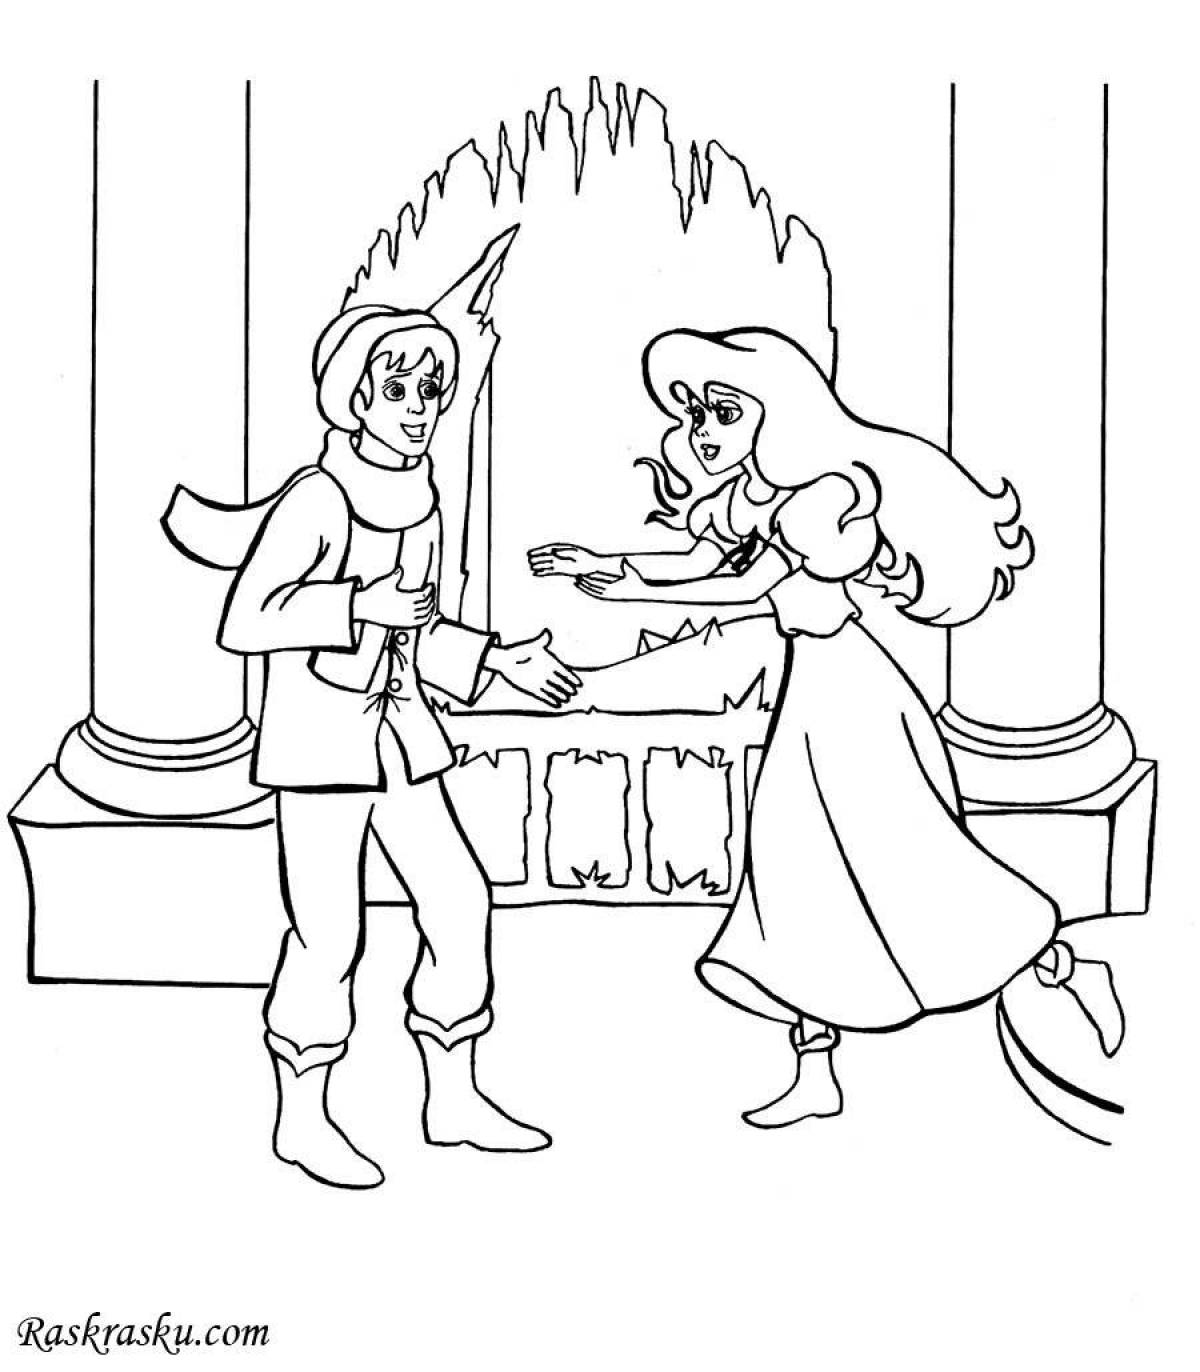 Нарисовать иллюстрацию к сказке снежная королева. Раскраски снежной королевы Кая и Герды.